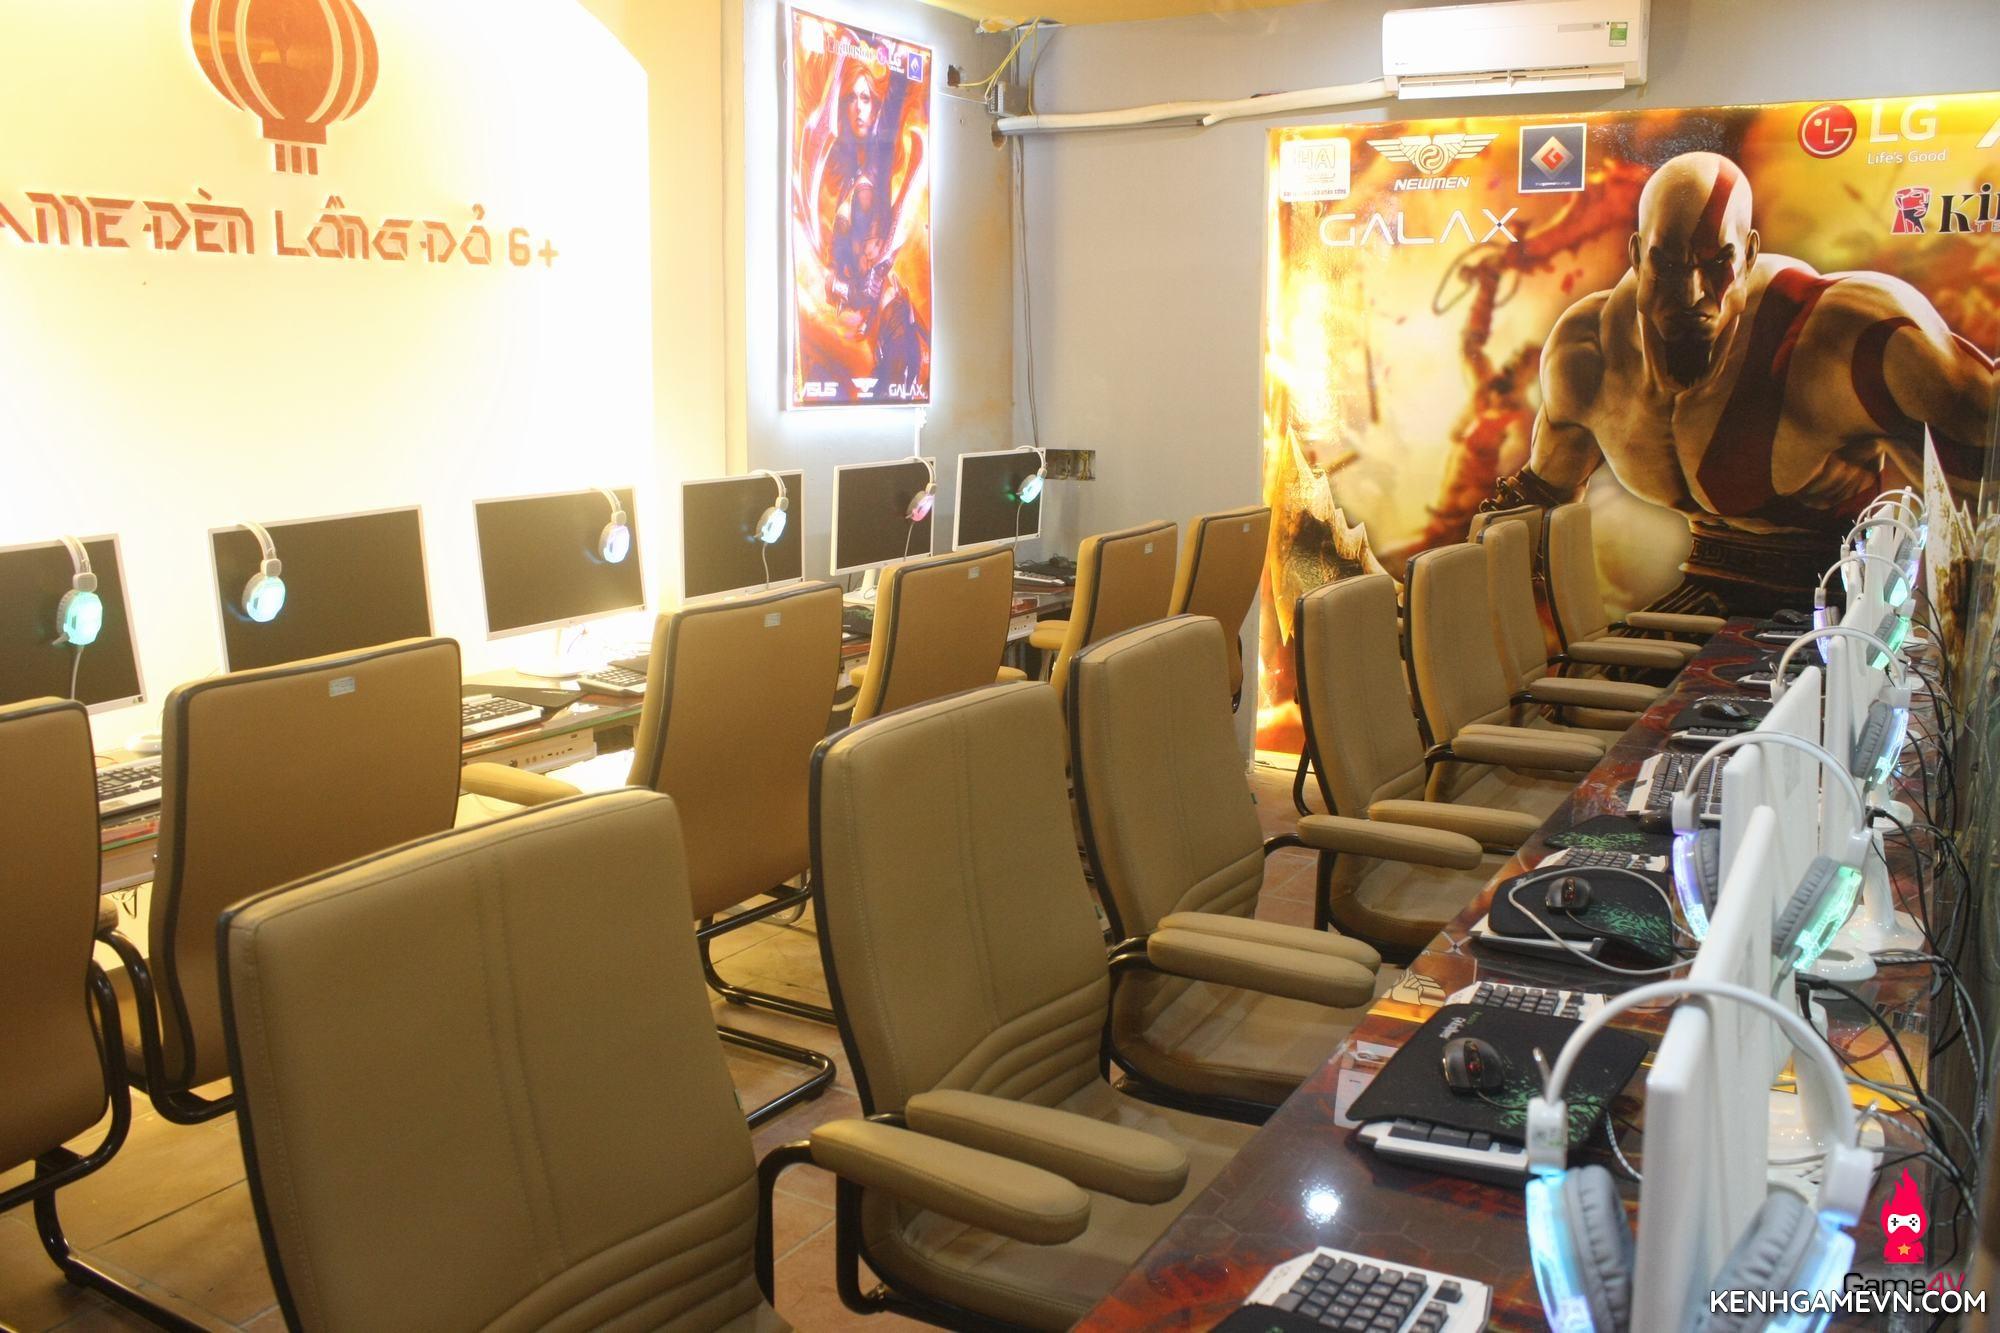 Chuỗi Gaming Center Đèn Lồng Đỏ khai trương cơ sở mới - Kênh Game VN - Trang Tin Tức Game mới nhất, UY TÍN và TRUNG LẬP tại KenhGameVN. Tổng hợp tin